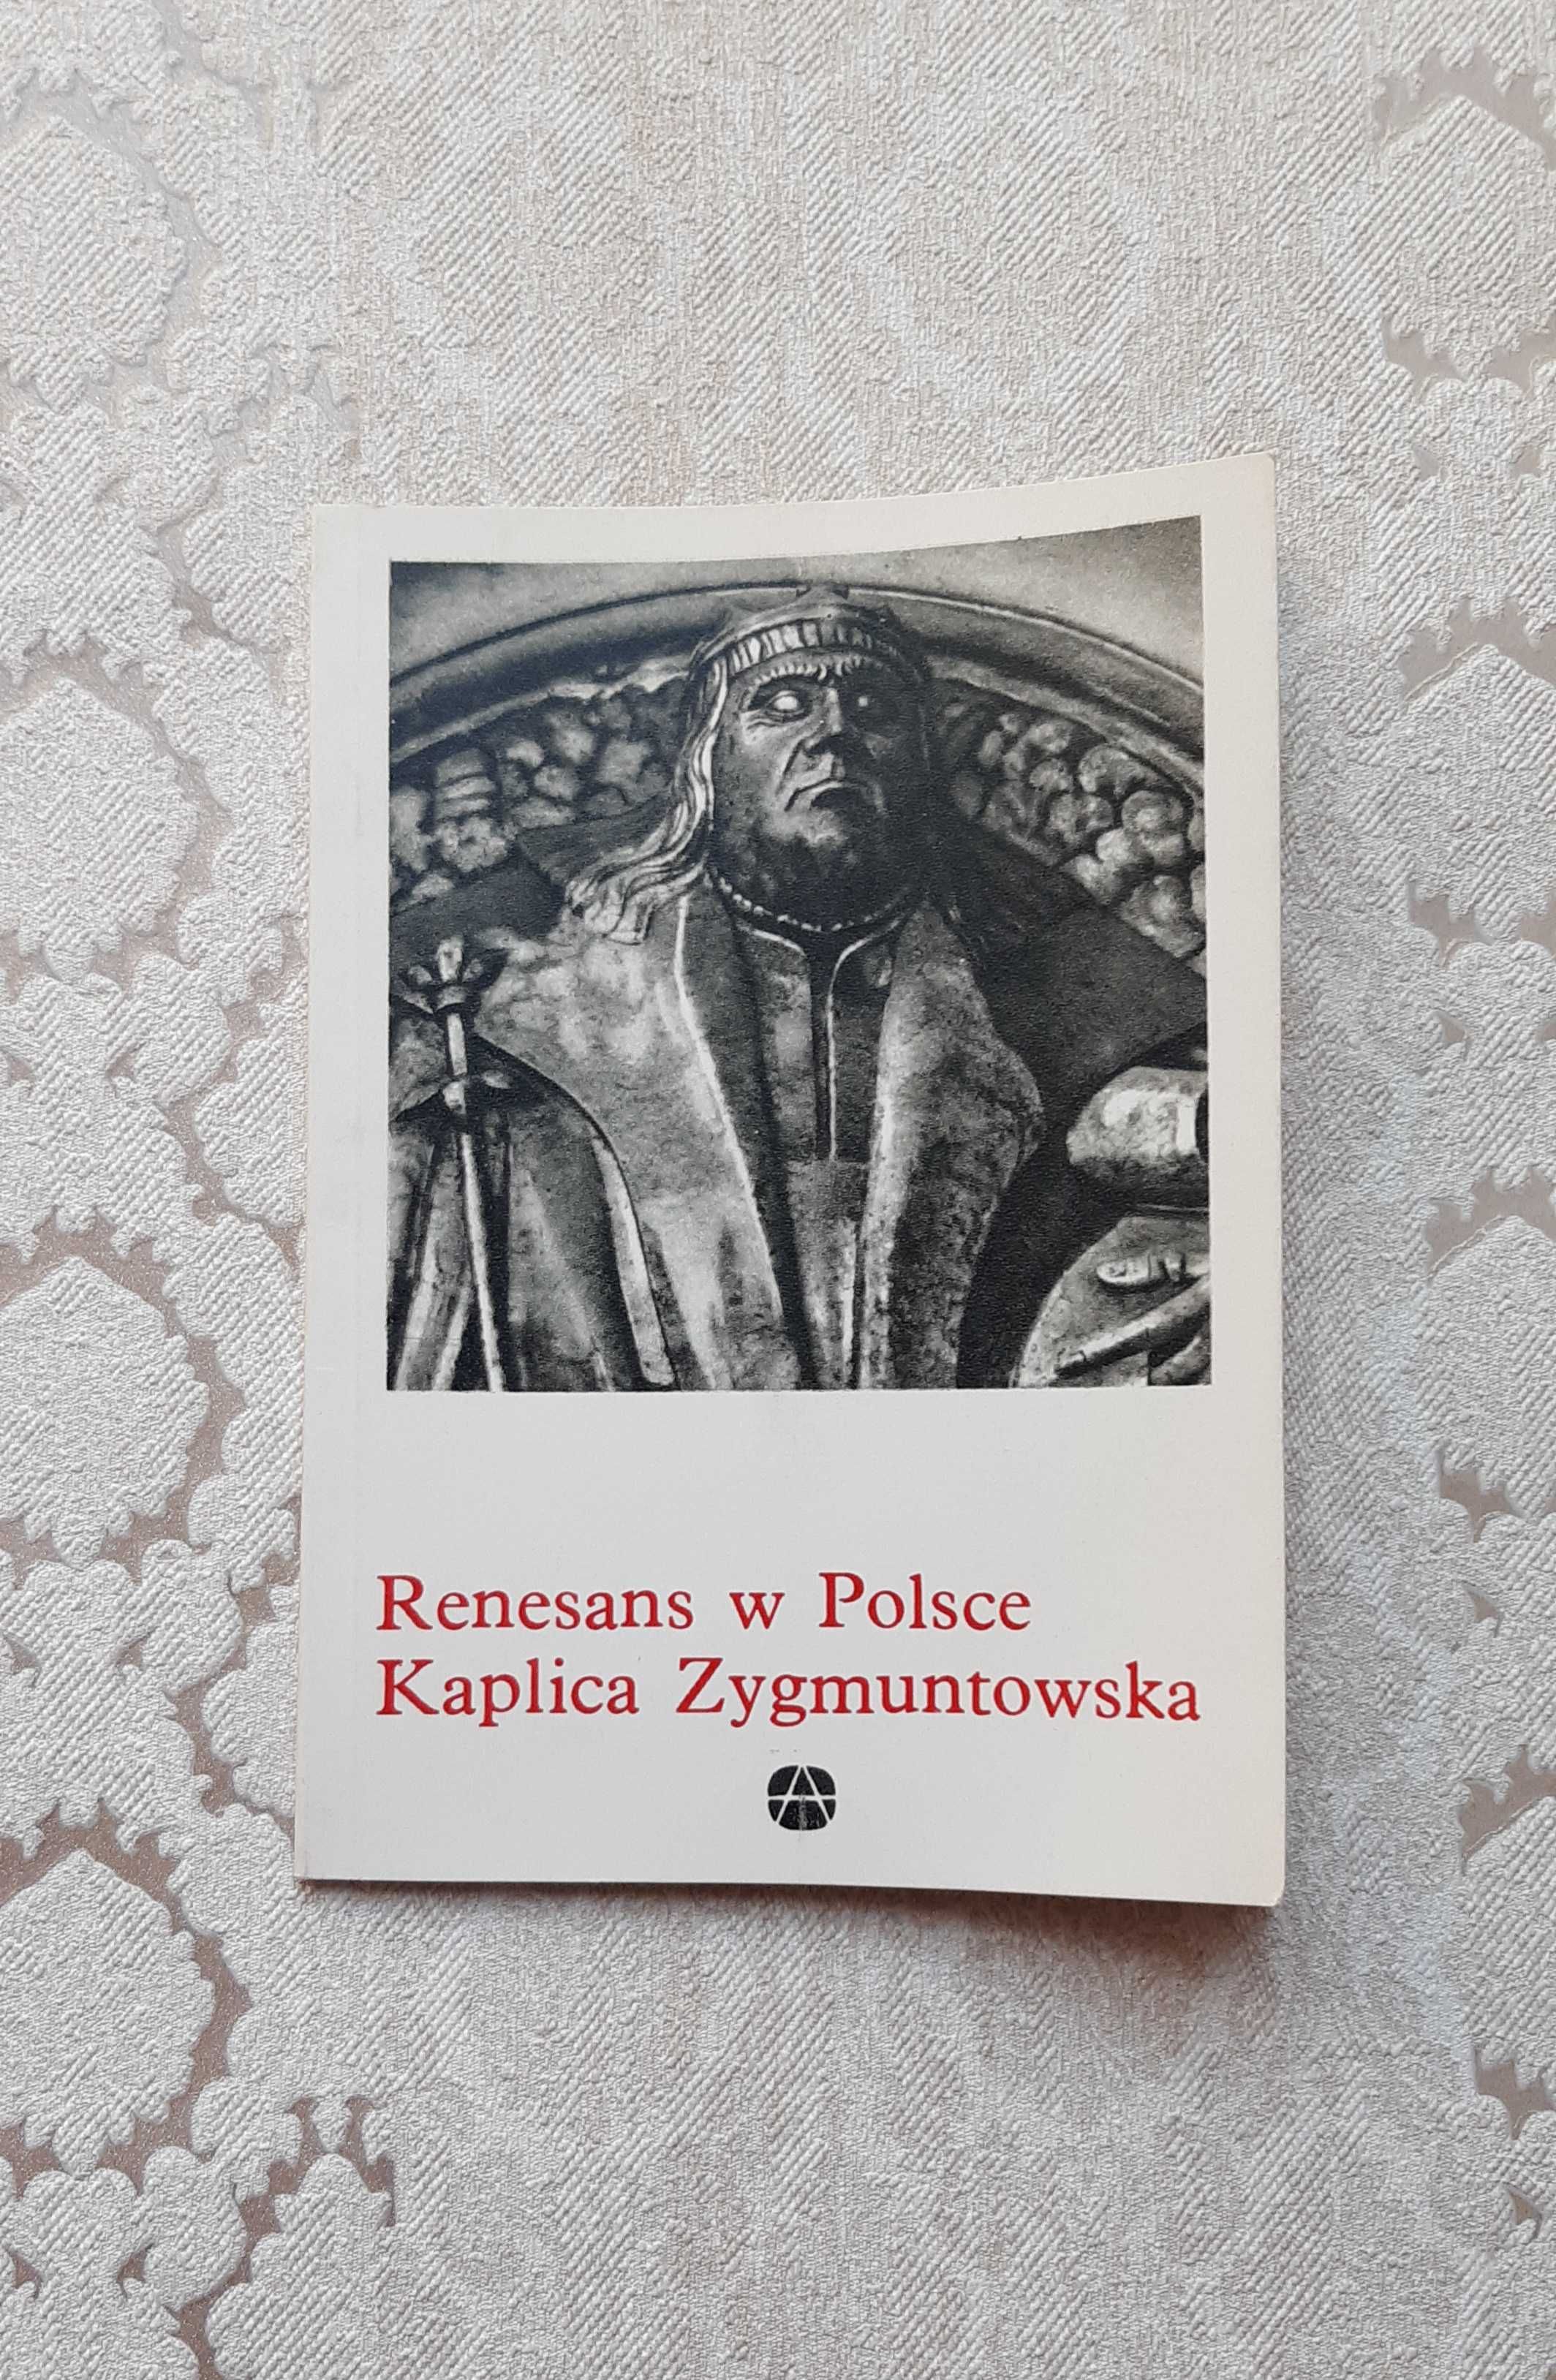 Książka "Renesans w Polsce Kaplica Zygmuntowska" Kozakiewiczowa